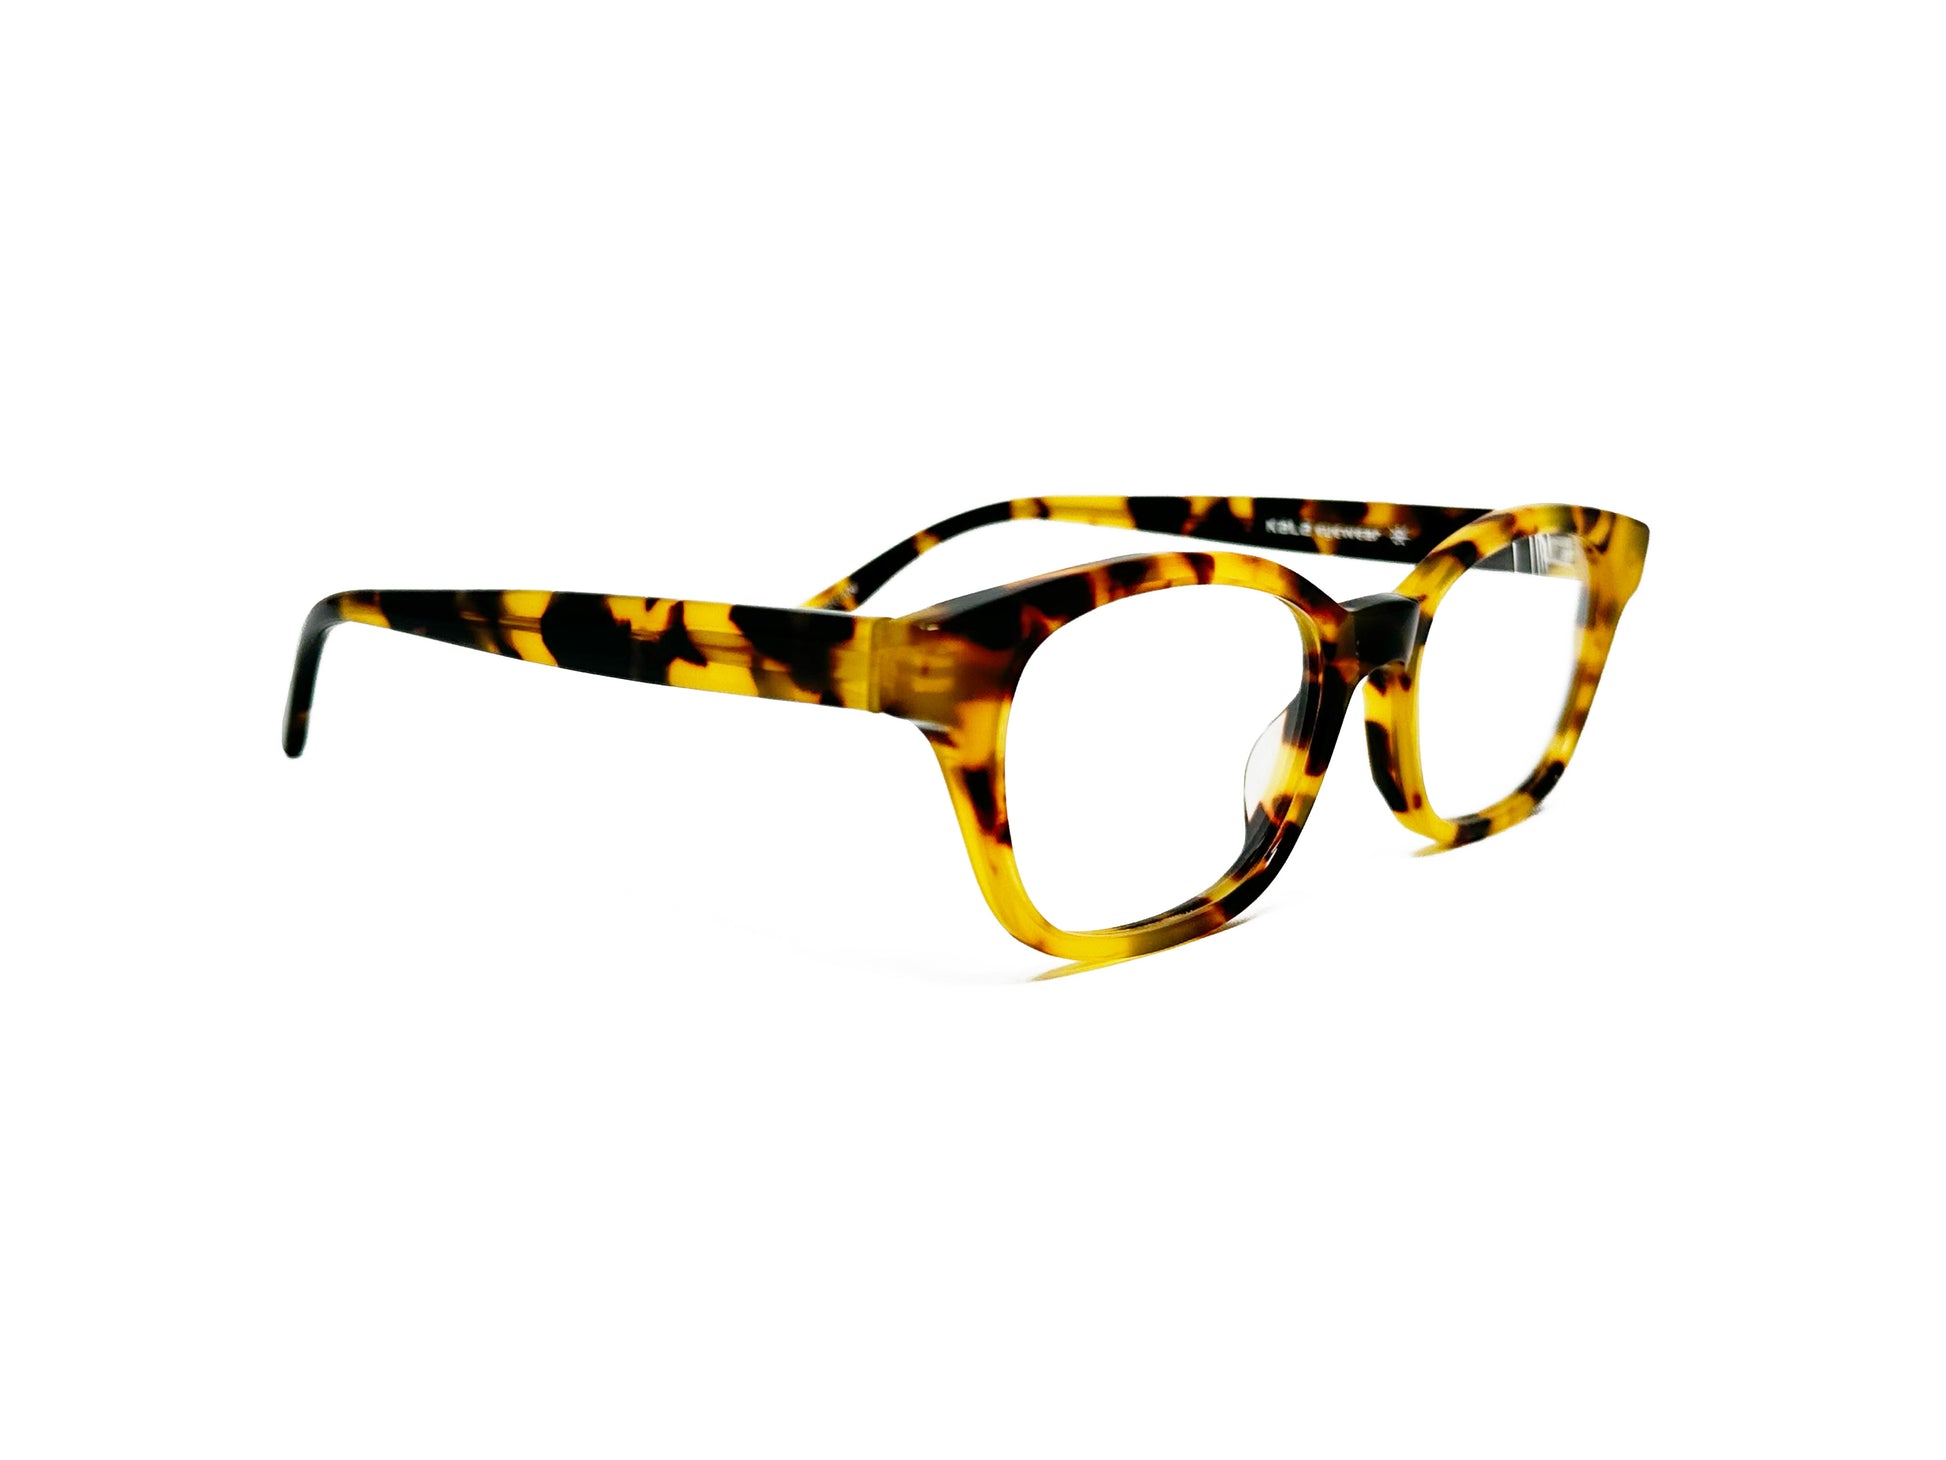 Kala Eyewear rectangular acetate optical frame. Model: Morgan. Color: TOK - Yellow-brown tortoise. Side view.